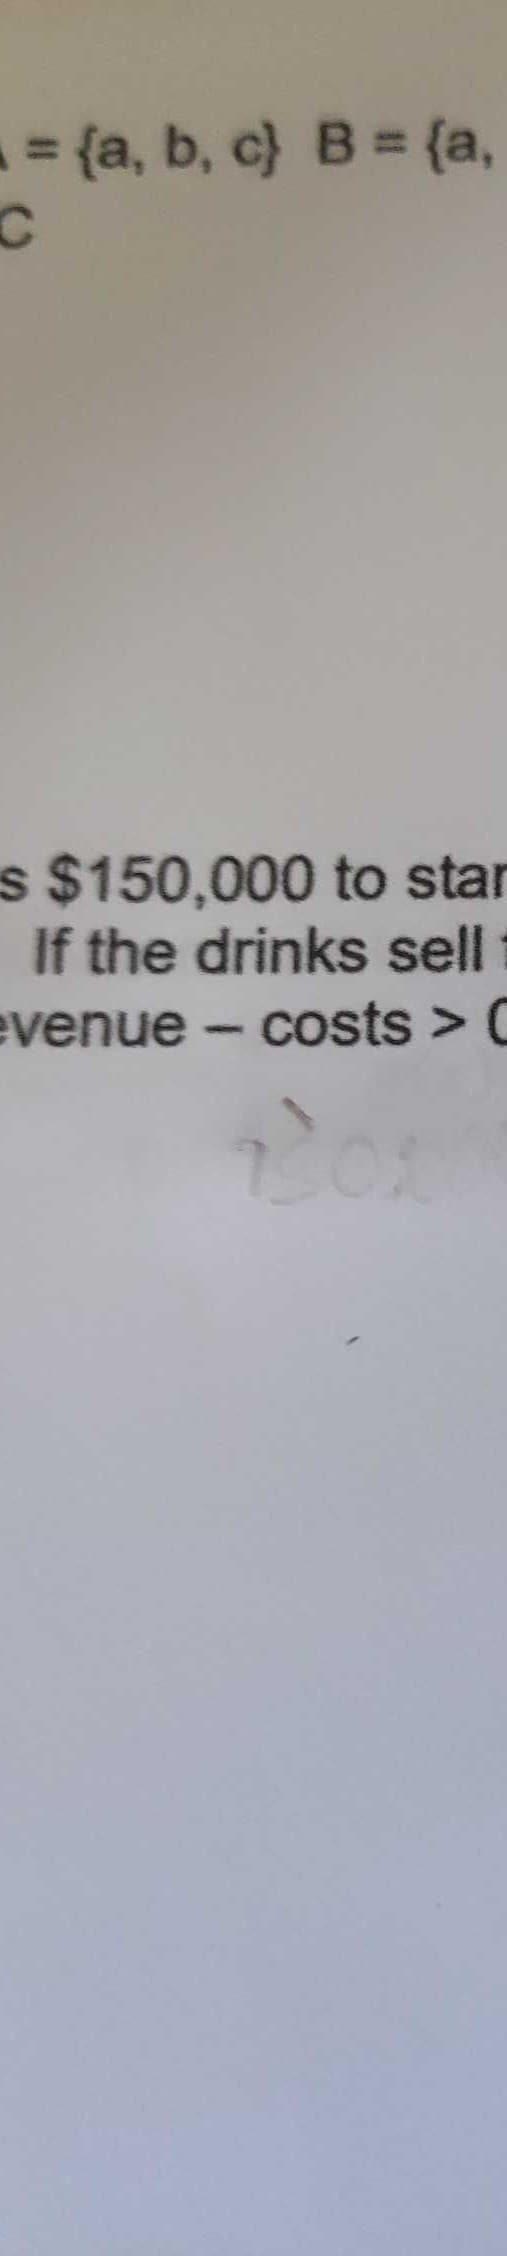 = {a, b, c) B = {a,
%3D
s $150,000 to star
If the drinks sell
evenue – costs > C
201
